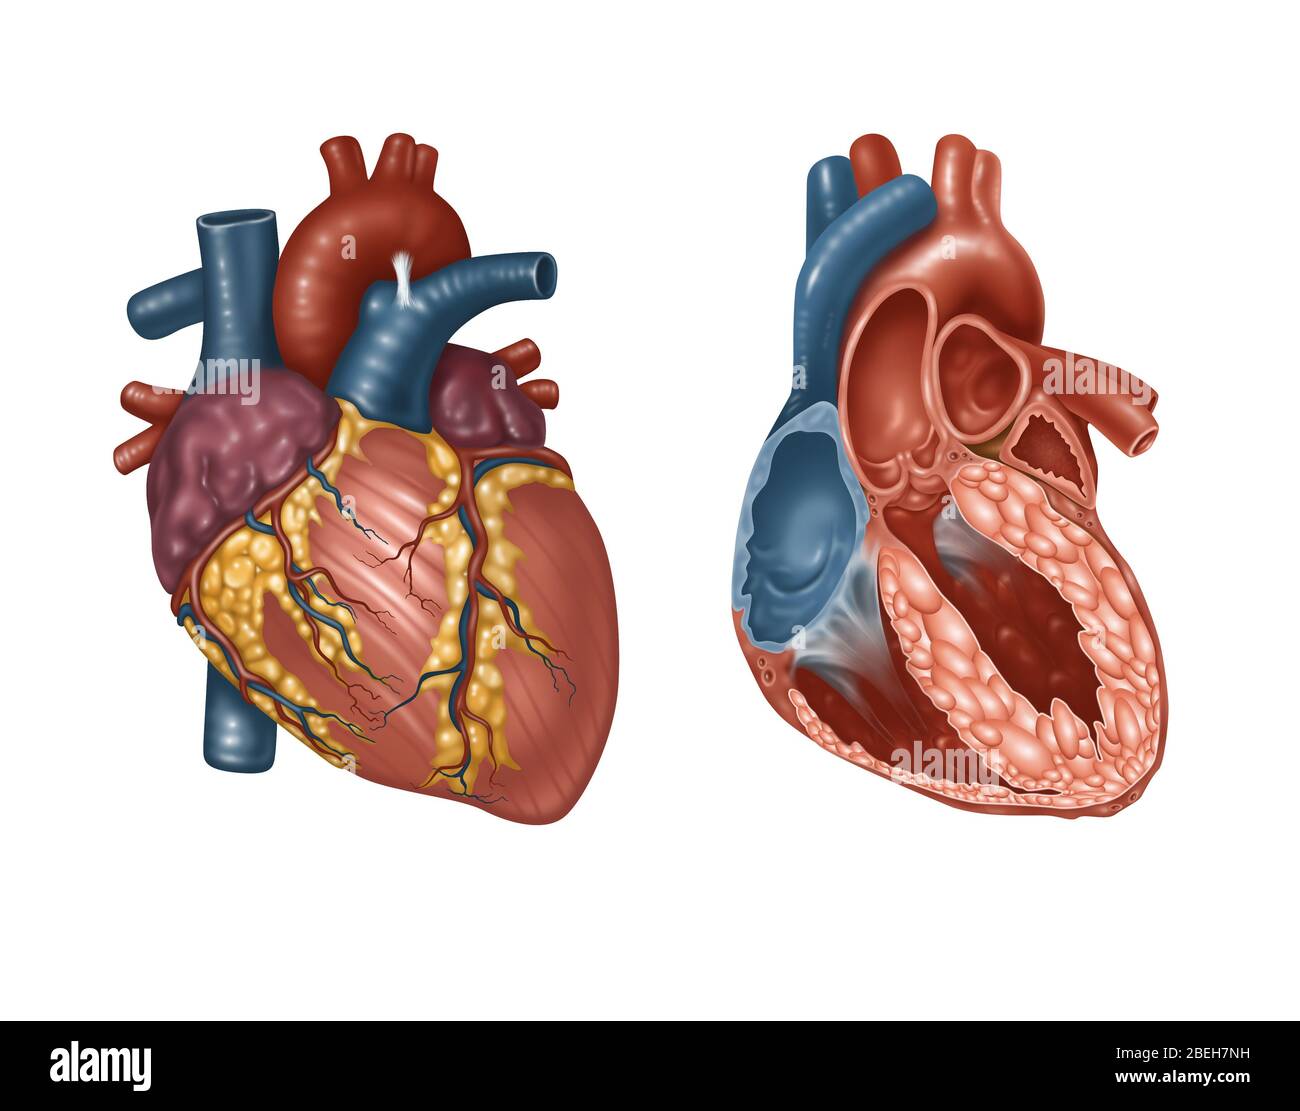 Extérieur et intérieur du cœur normal, illustration Banque D'Images